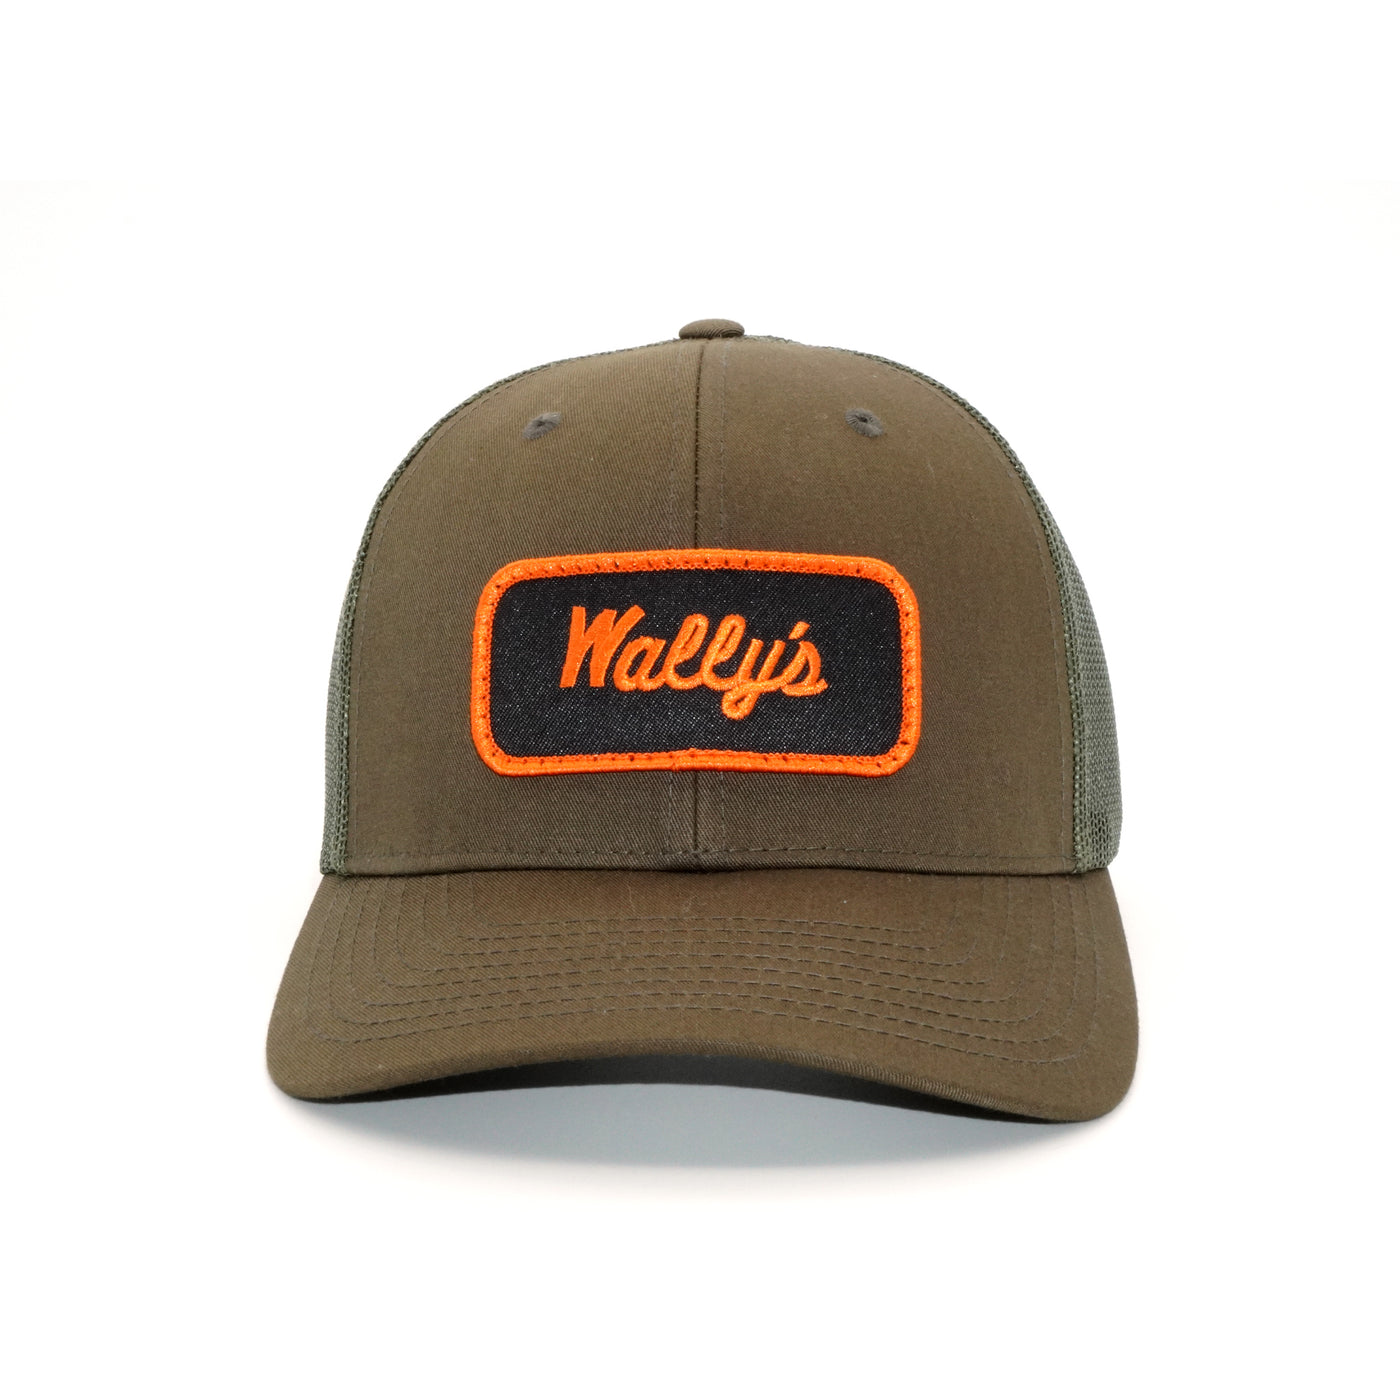 Wally's Mechanic Green Trucker Hat